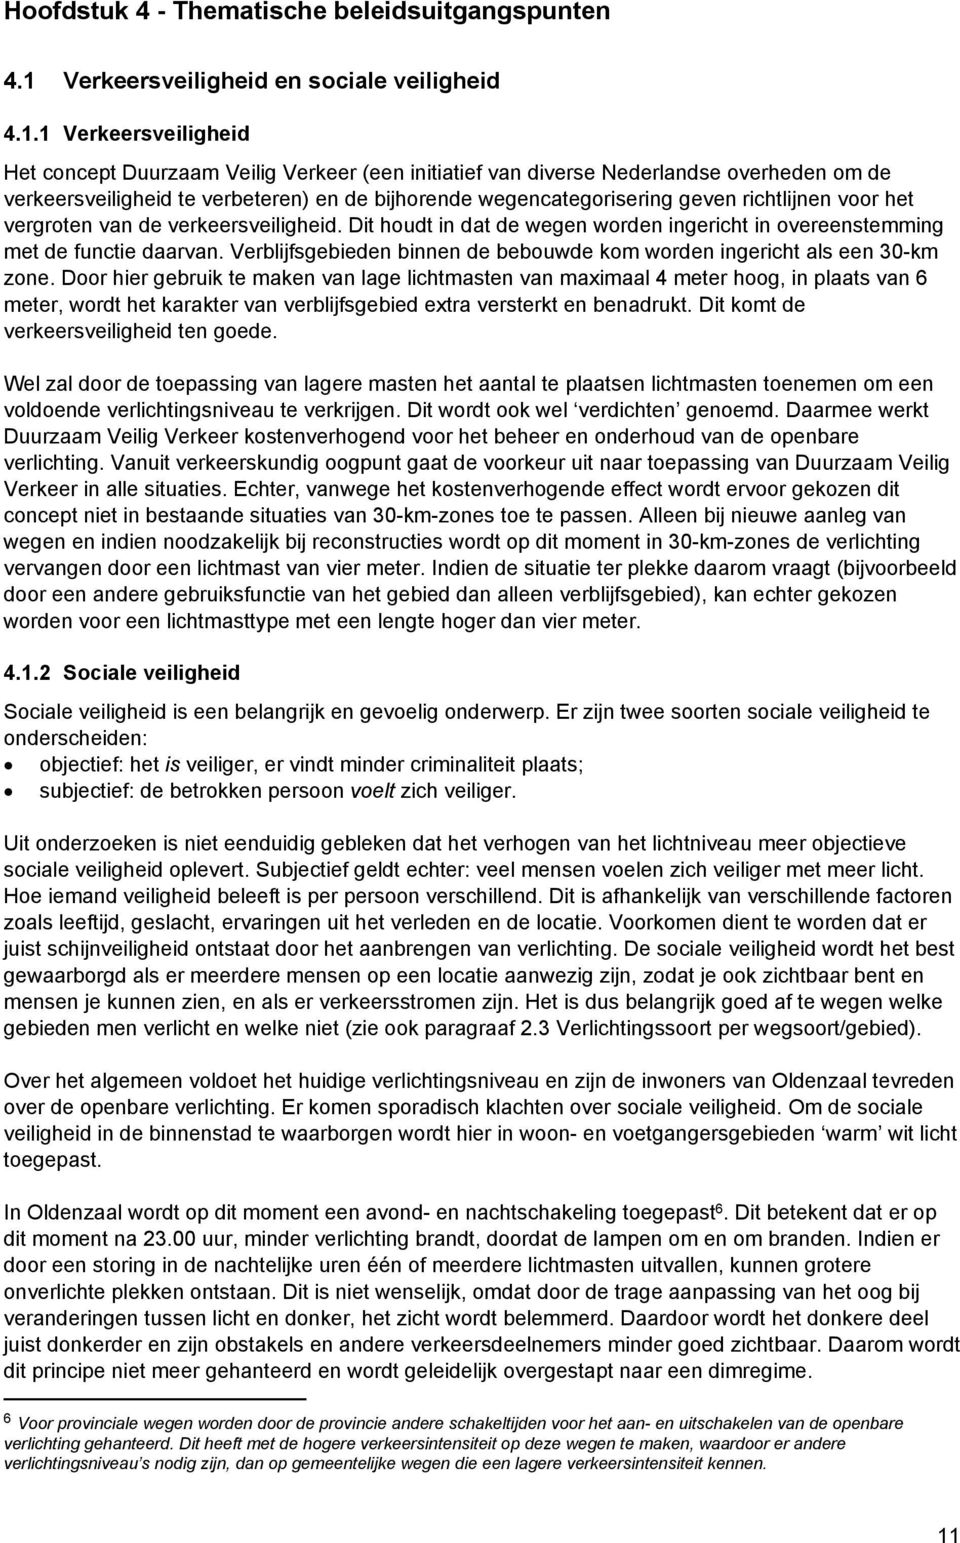 1 Verkeersveiligheid Het concept Duurzaam Veilig Verkeer (een initiatief van diverse Nederlandse overheden om de verkeersveiligheid te verbeteren) en de bijhorende wegencategorisering geven